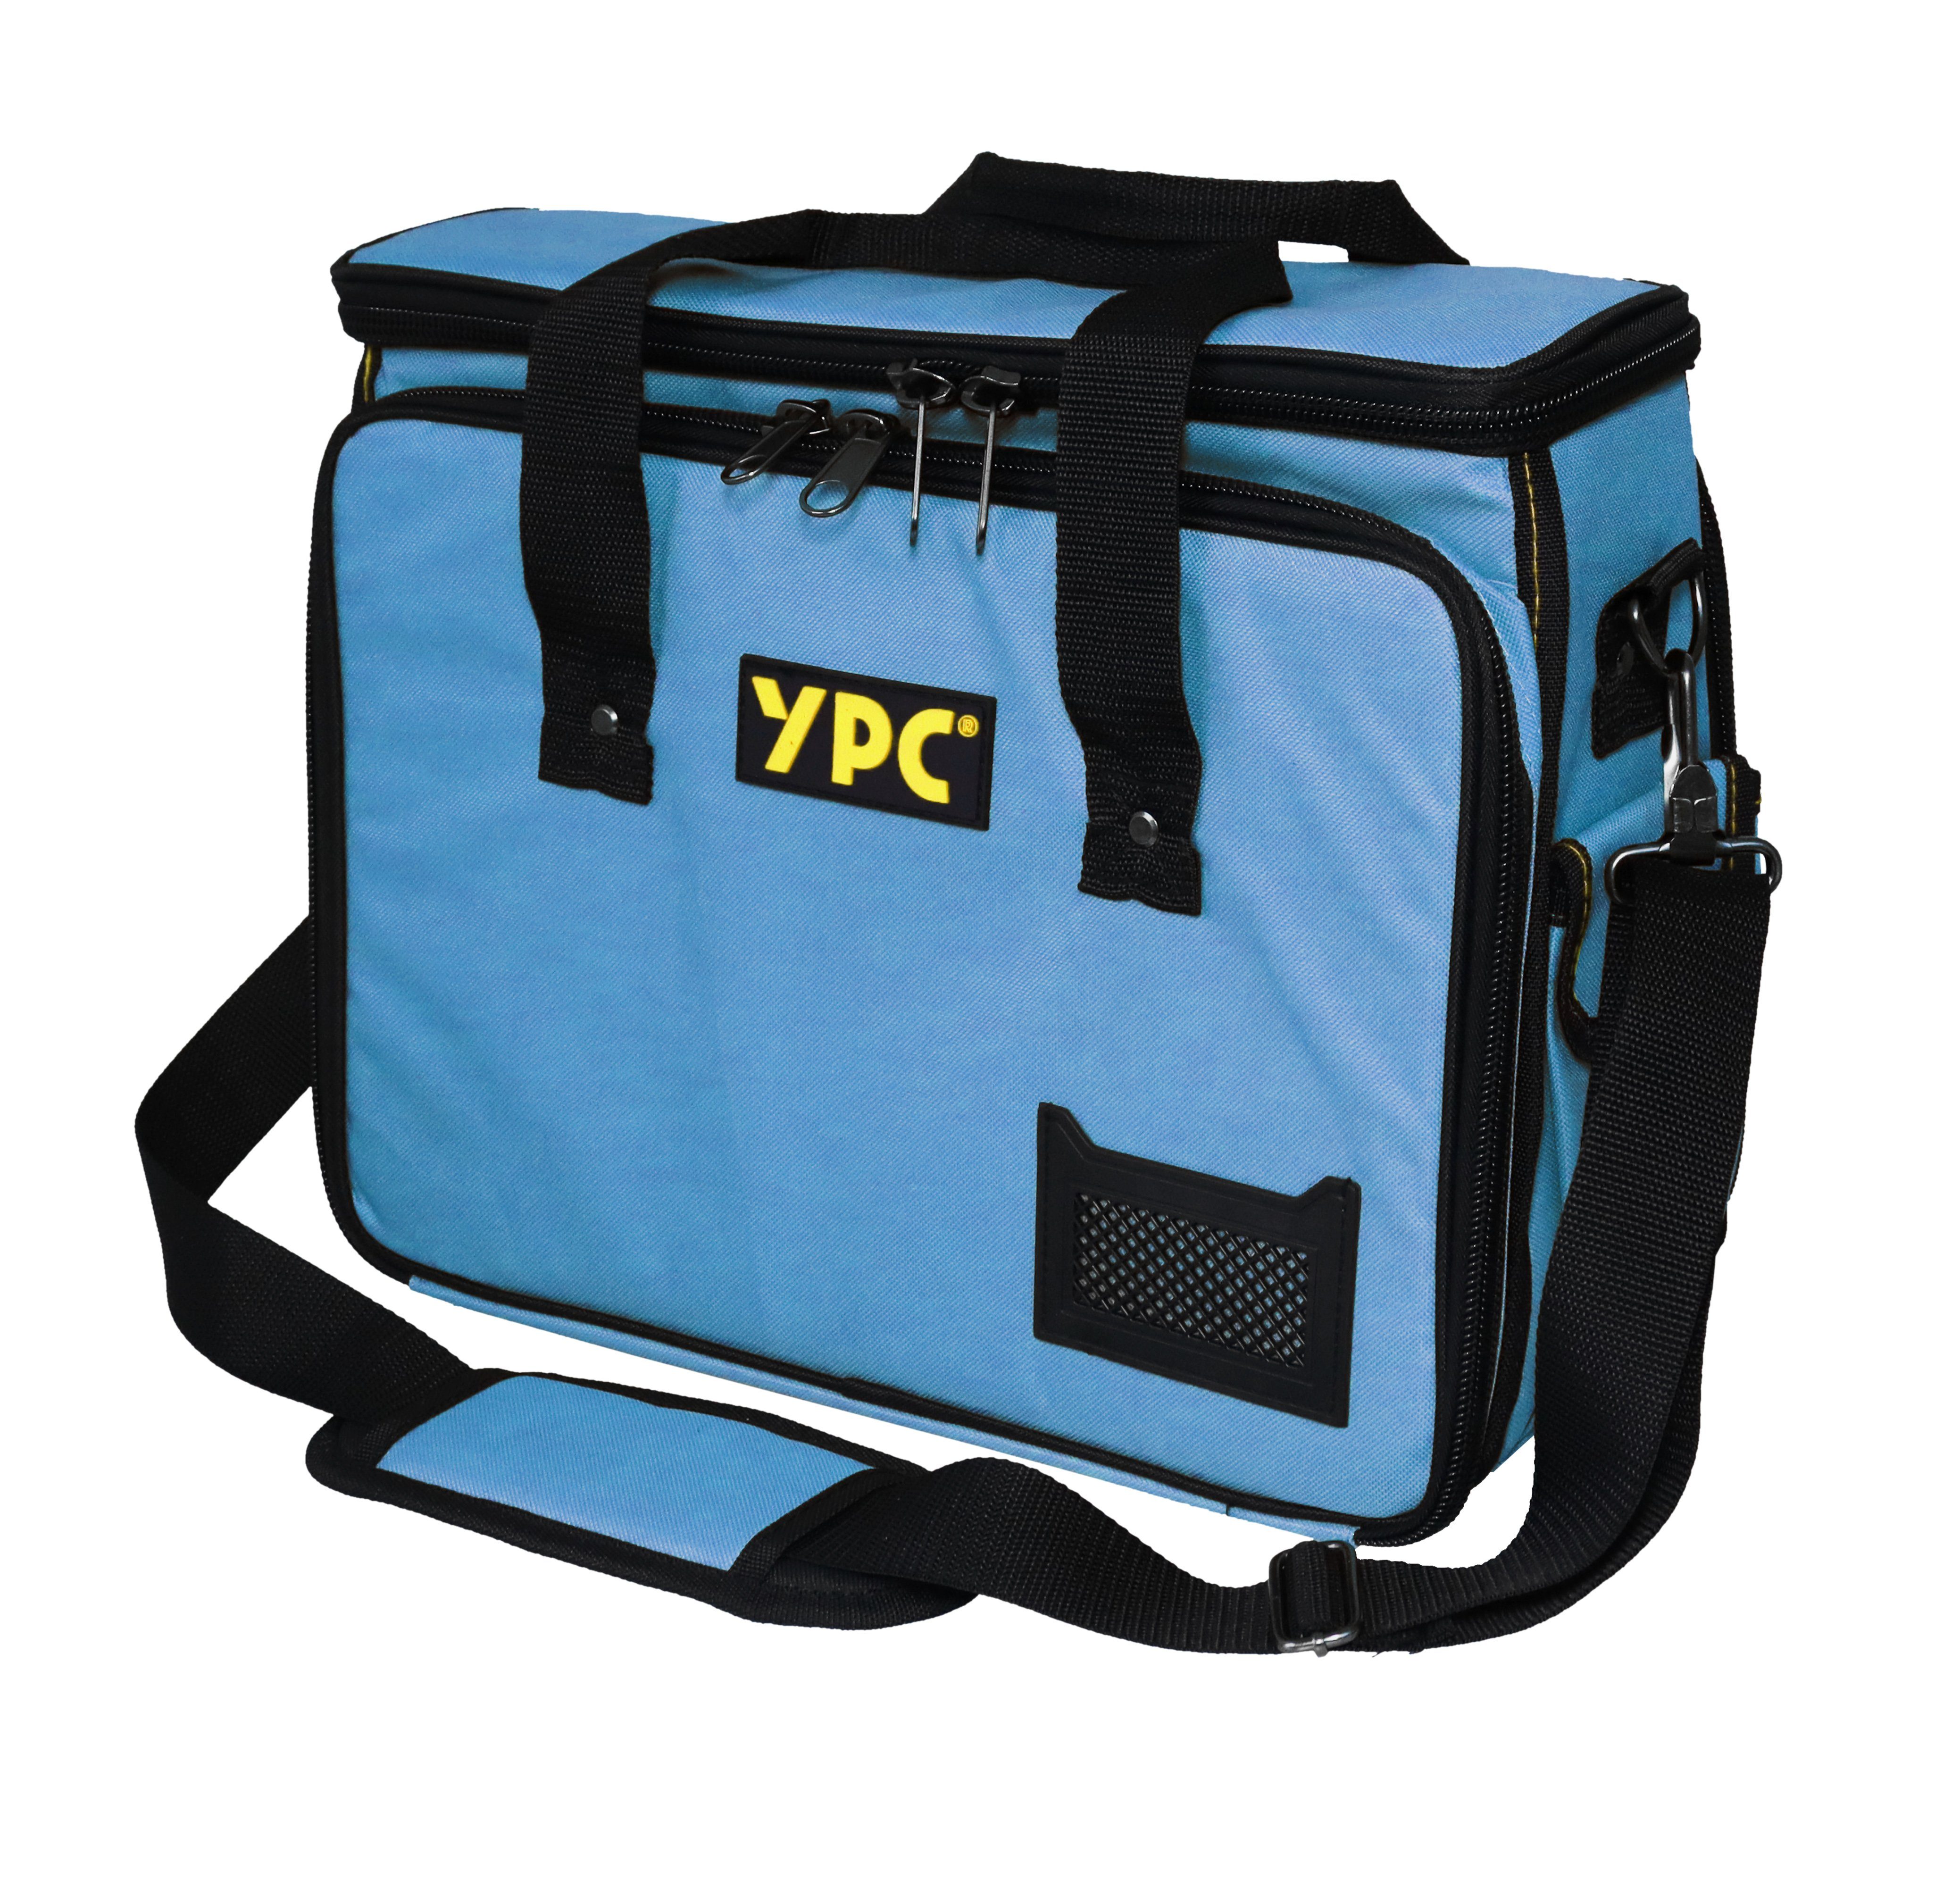 YPC Werkzeugtasche "Operator" Werkzeugtasche XL, 40x32x20cm, 20 kg Tragkraft, Umhängetasche, Tragetasche für Werkzeug mit Haltern, Fächern und Einschüben Blau